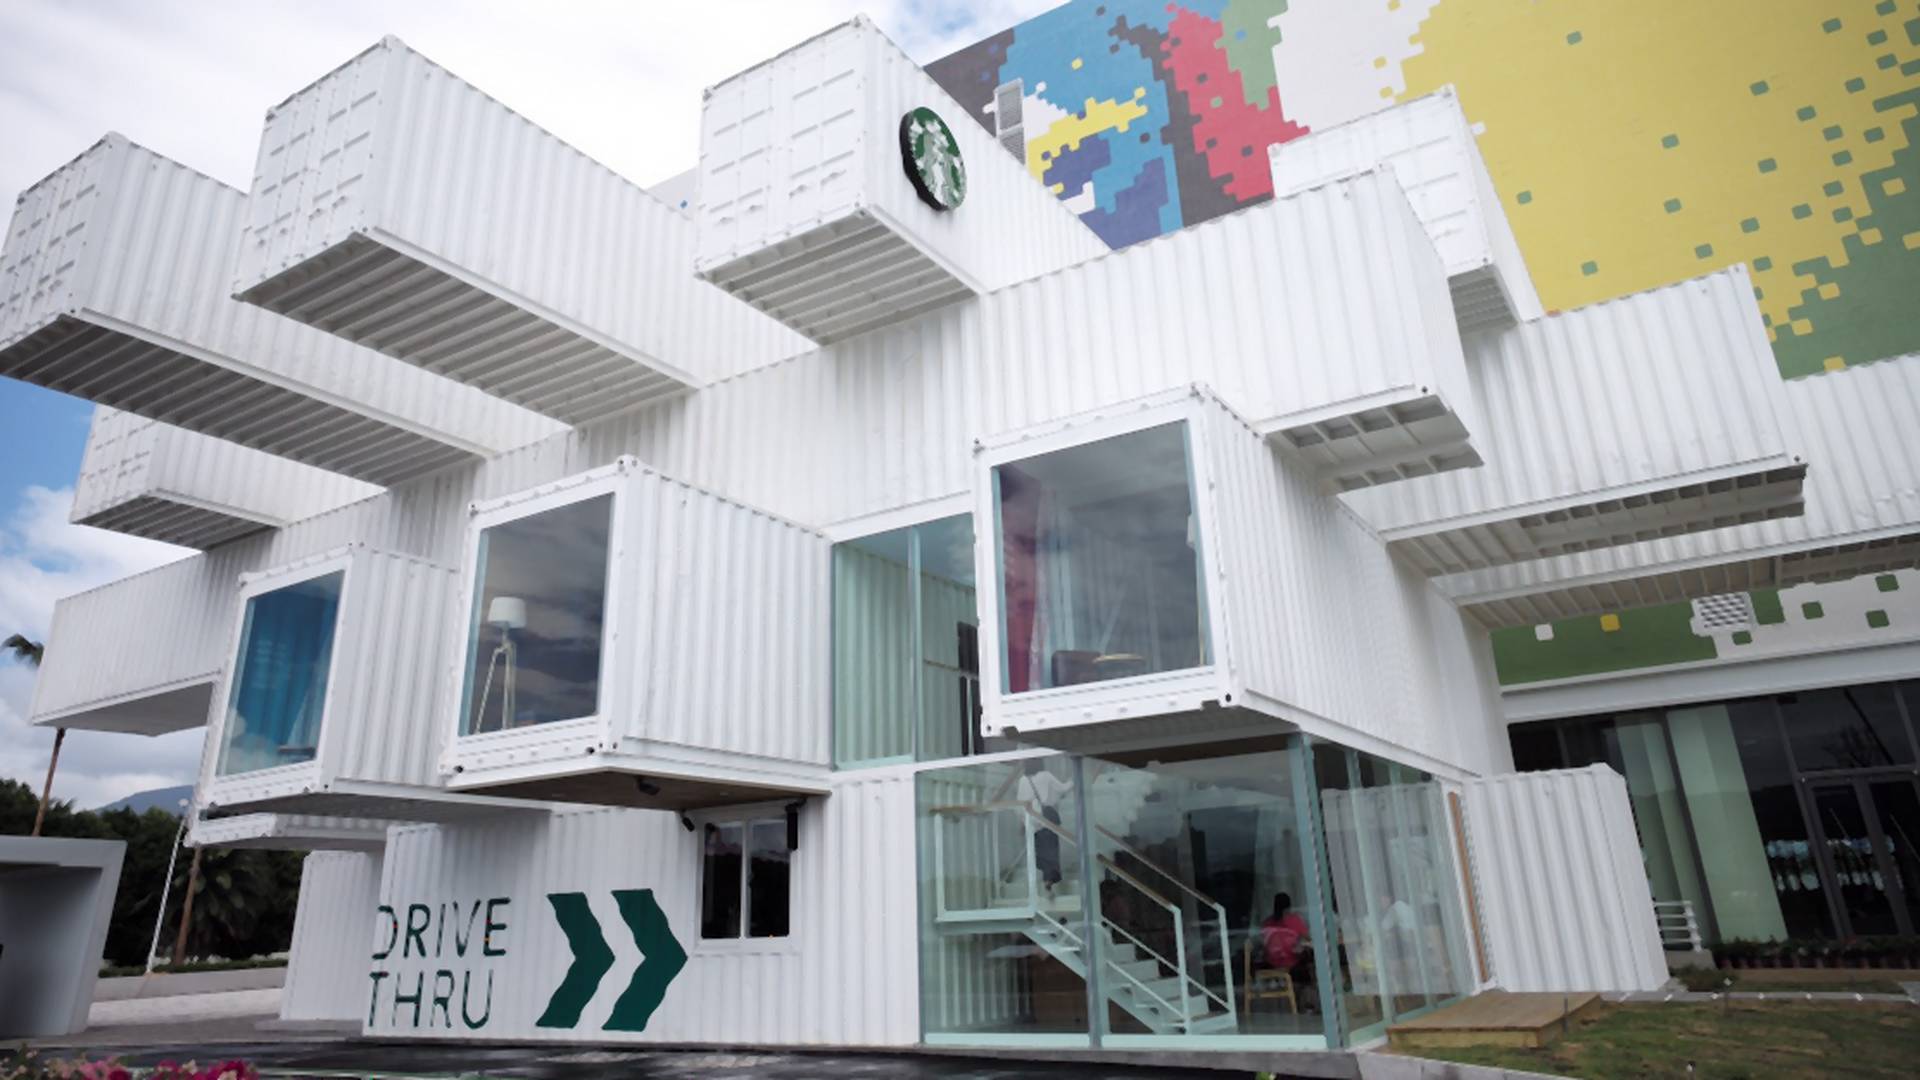 Kawiarnia Starbucks zbudowana z 29 kontenerów. Firma stawia na recykling